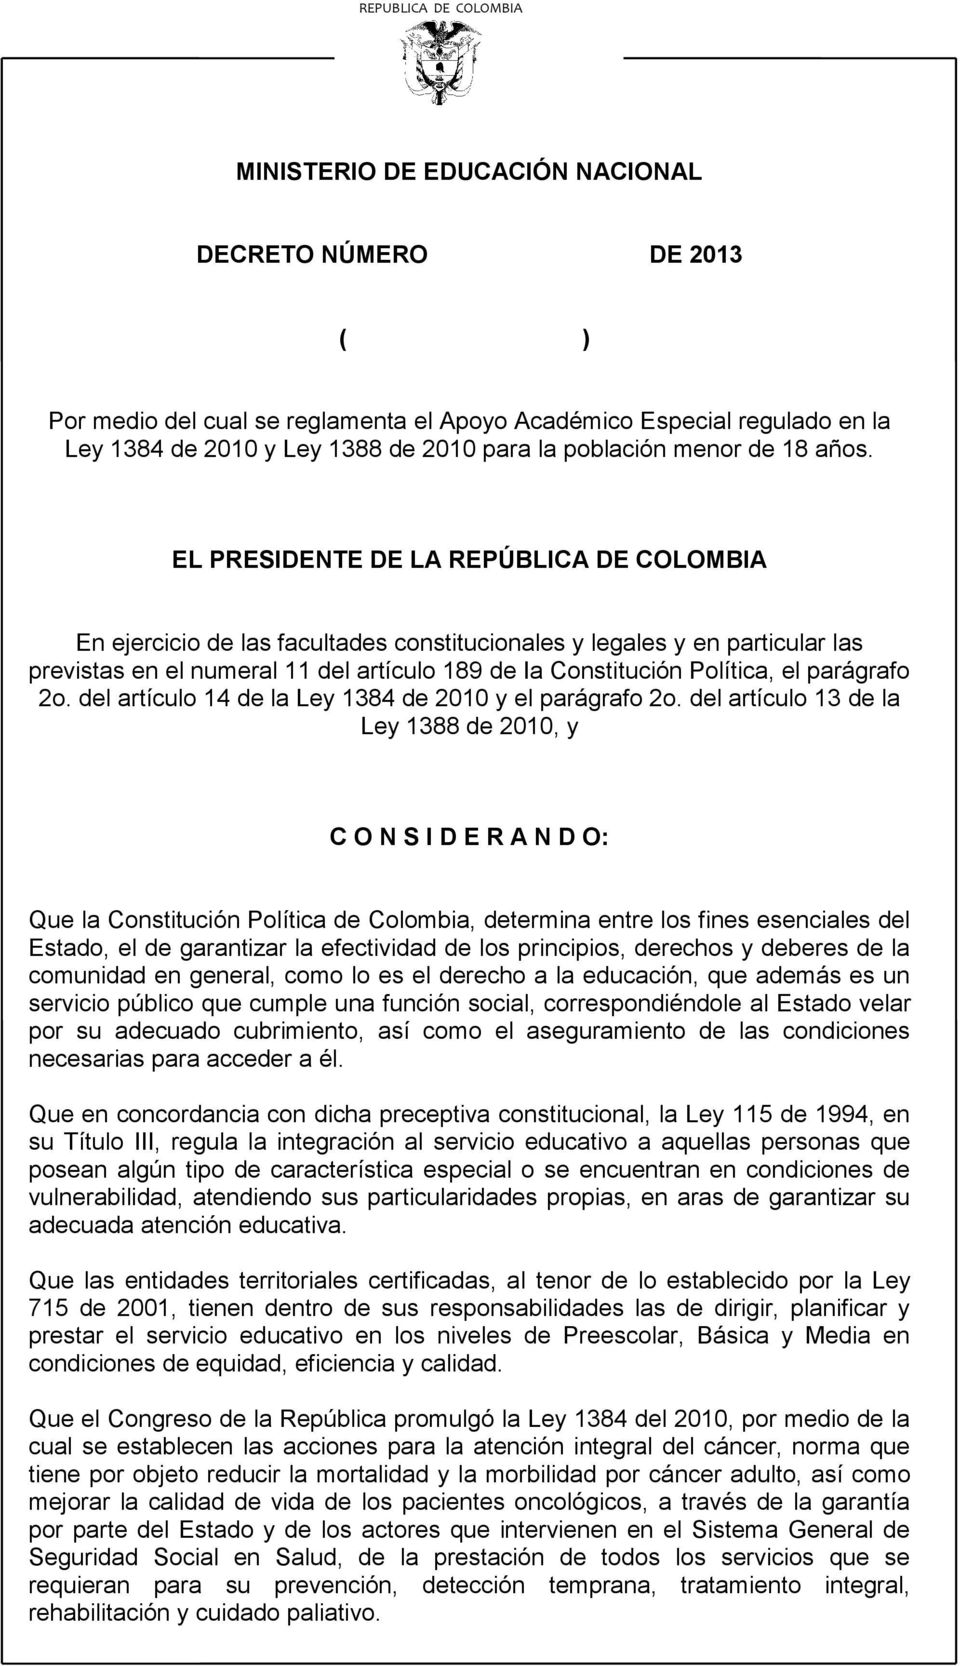 del artículo 13 de la Ley 1388 de 2010, y C O N S I D E R A N D O: Que la Constitución Política de Colombia, determina entre los fines esenciales del Estado, el de garantizar la efectividad de los